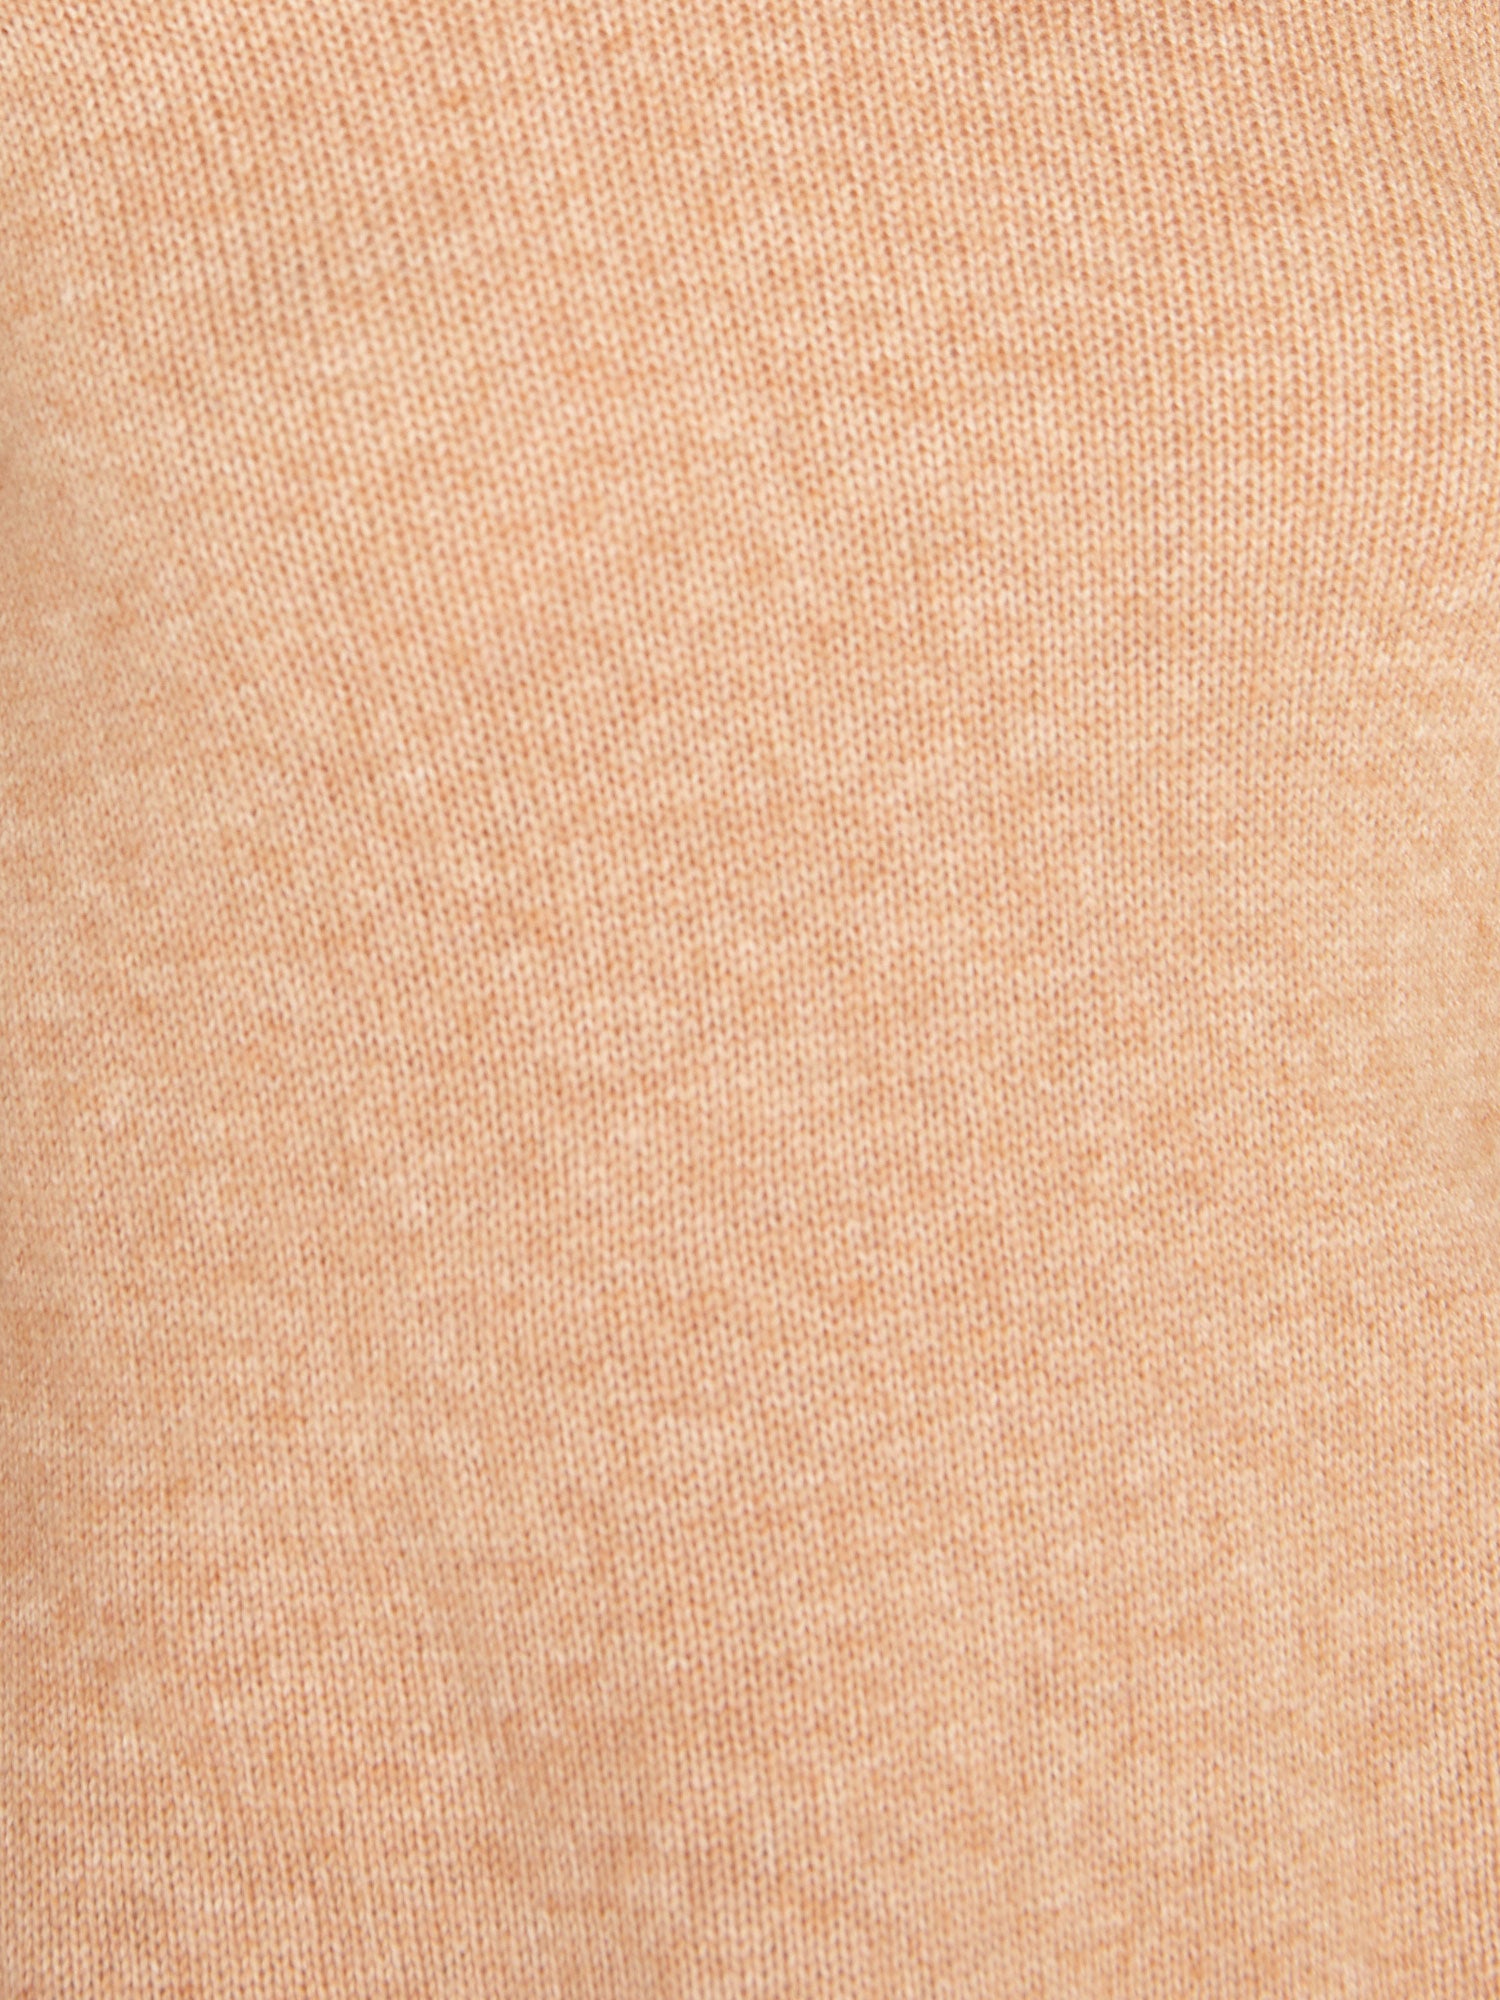 Jolie tan layered turtleneck sweater close up